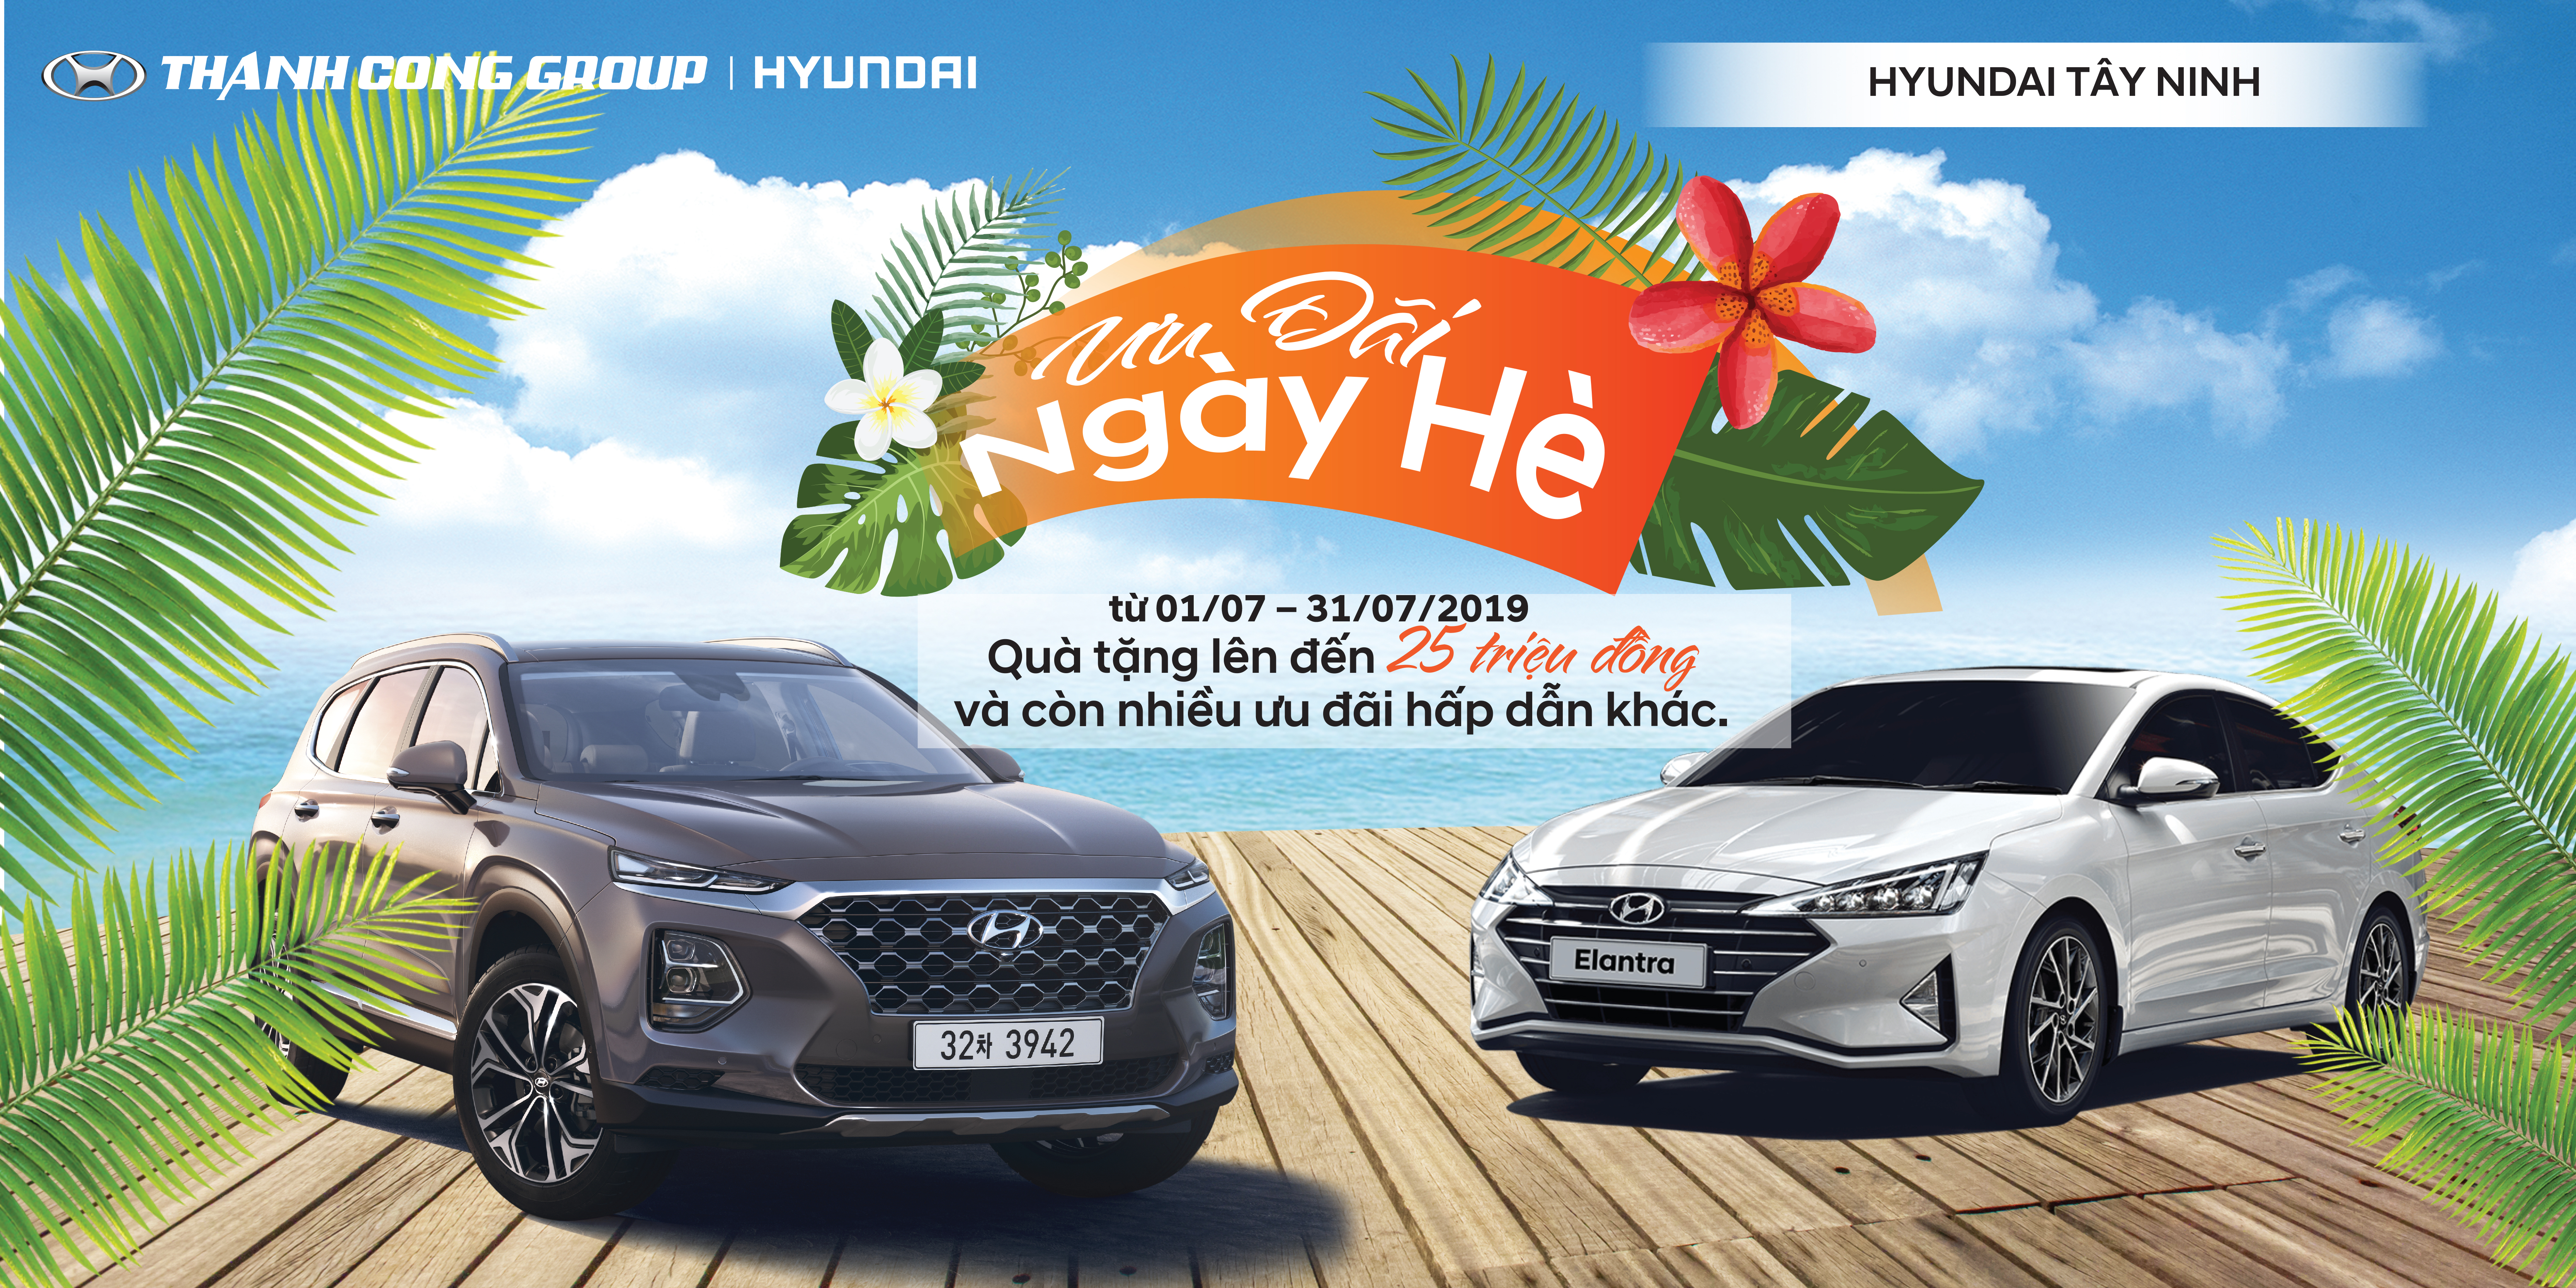 Ưu Đãi Ngày Hè tại Hyundai Tây Ninh